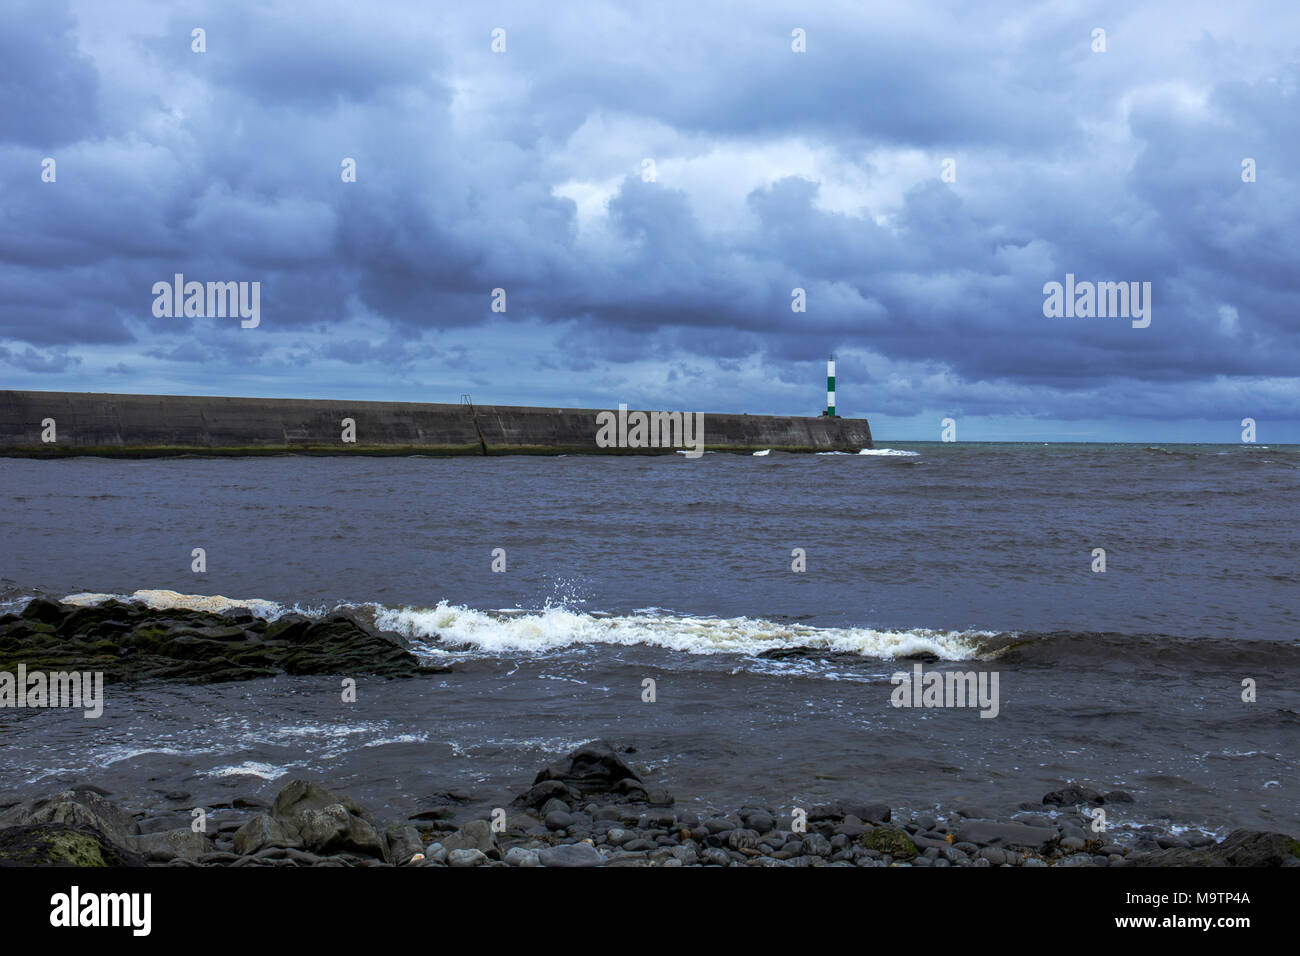 La pierre jetée avec orage venant en sens inverse à Aberystwyth Ceredigion Pays de Galles UK Banque D'Images